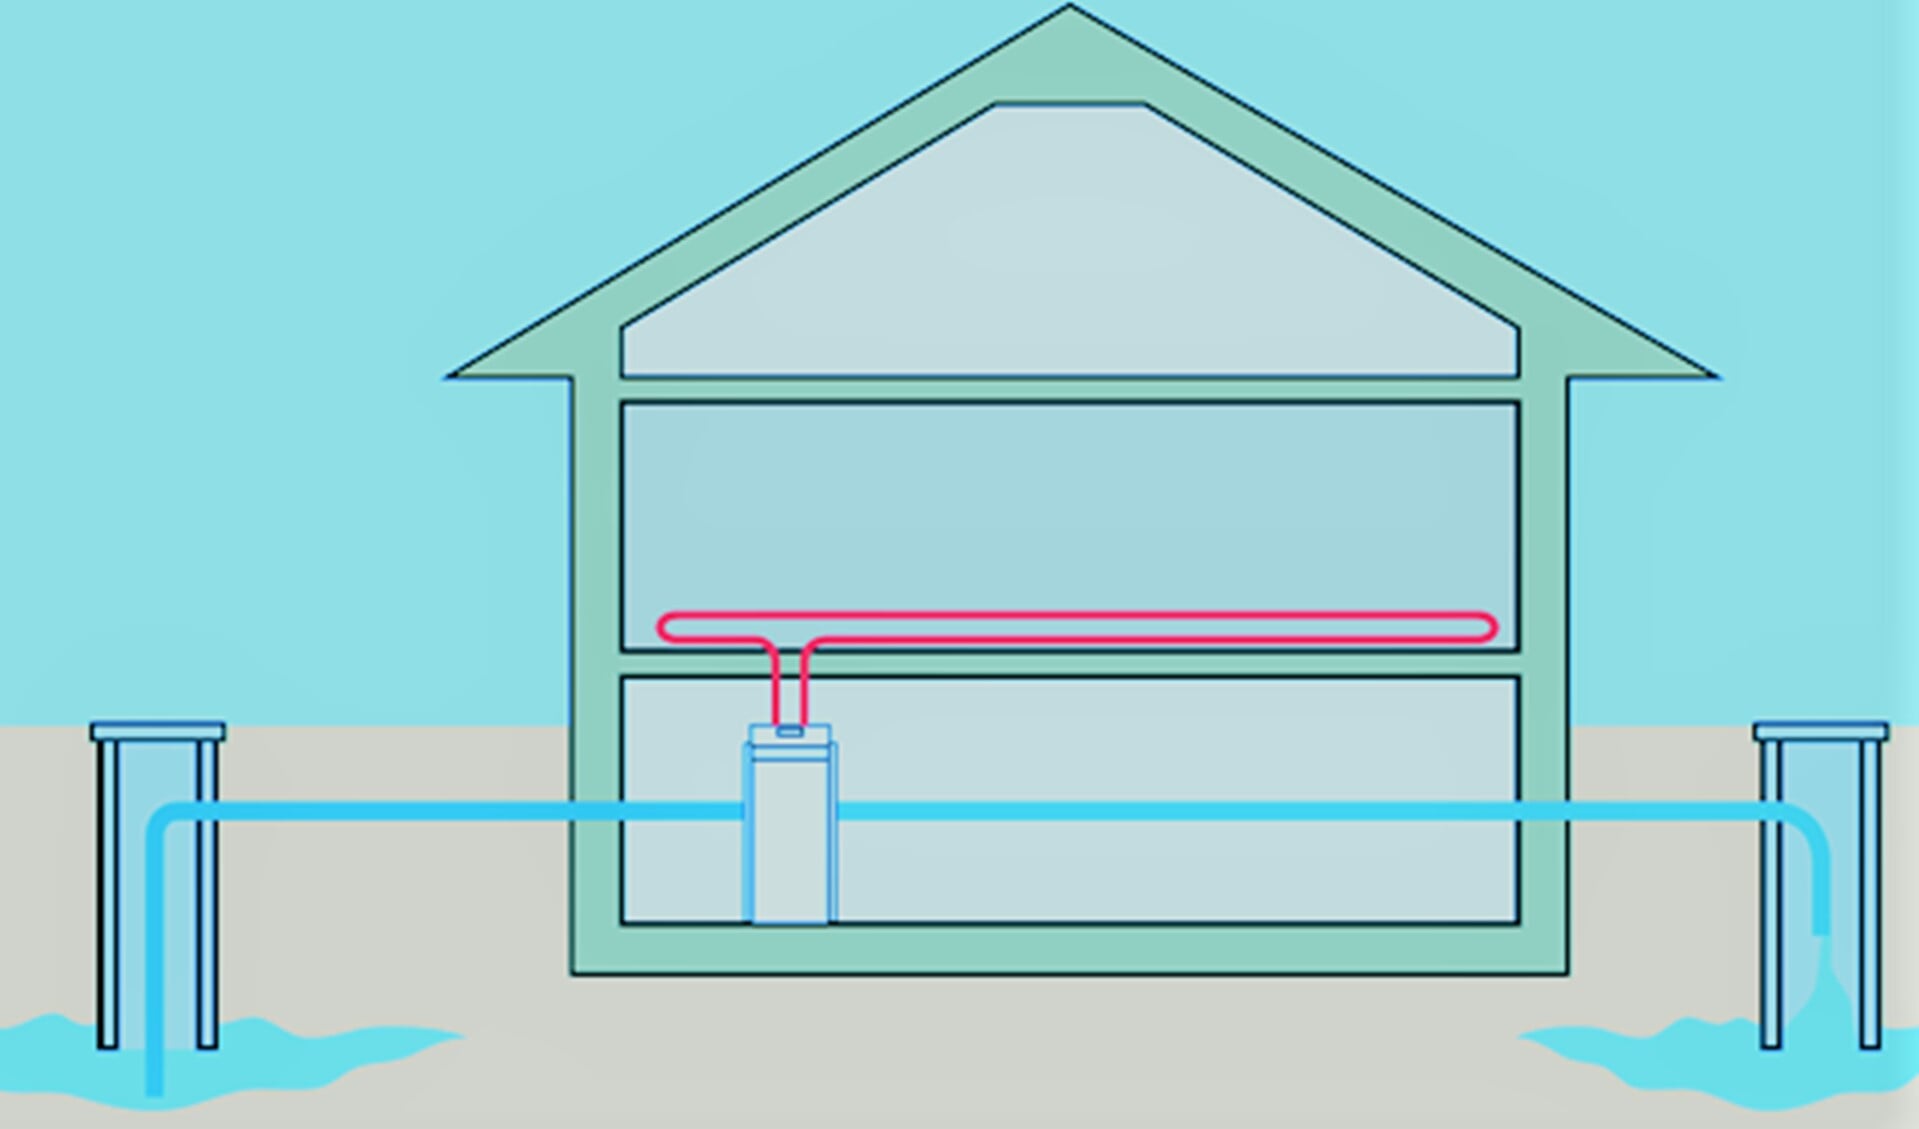 Bij aquathermie wordt energie uit verschillende waterbronnen gehaald om huizen en gebouwen te koelen en /of verwarmen (foto: pr).